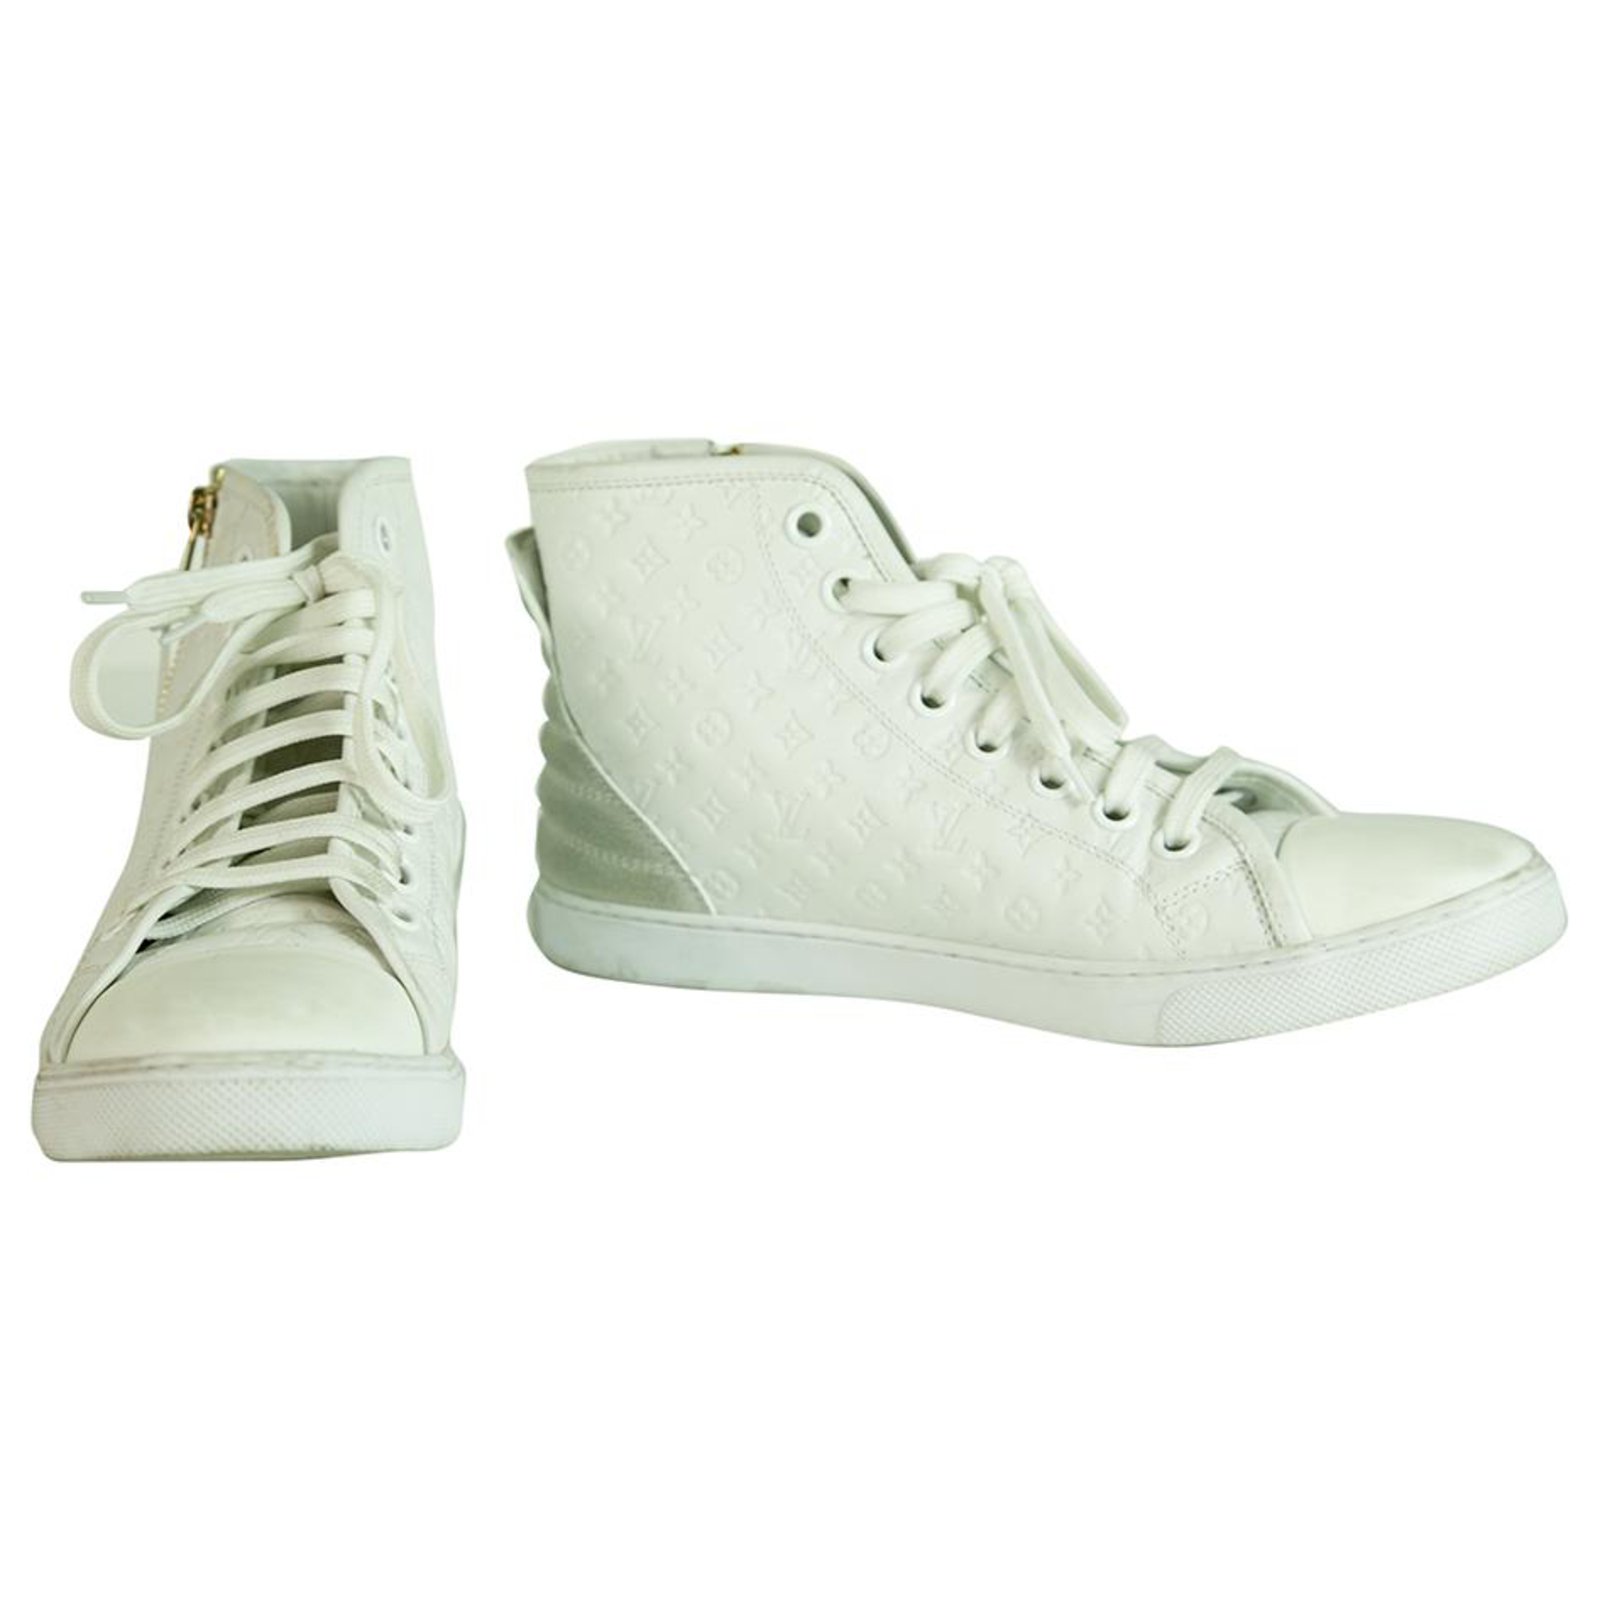 Louis Vuitton White Fashion Sneakers